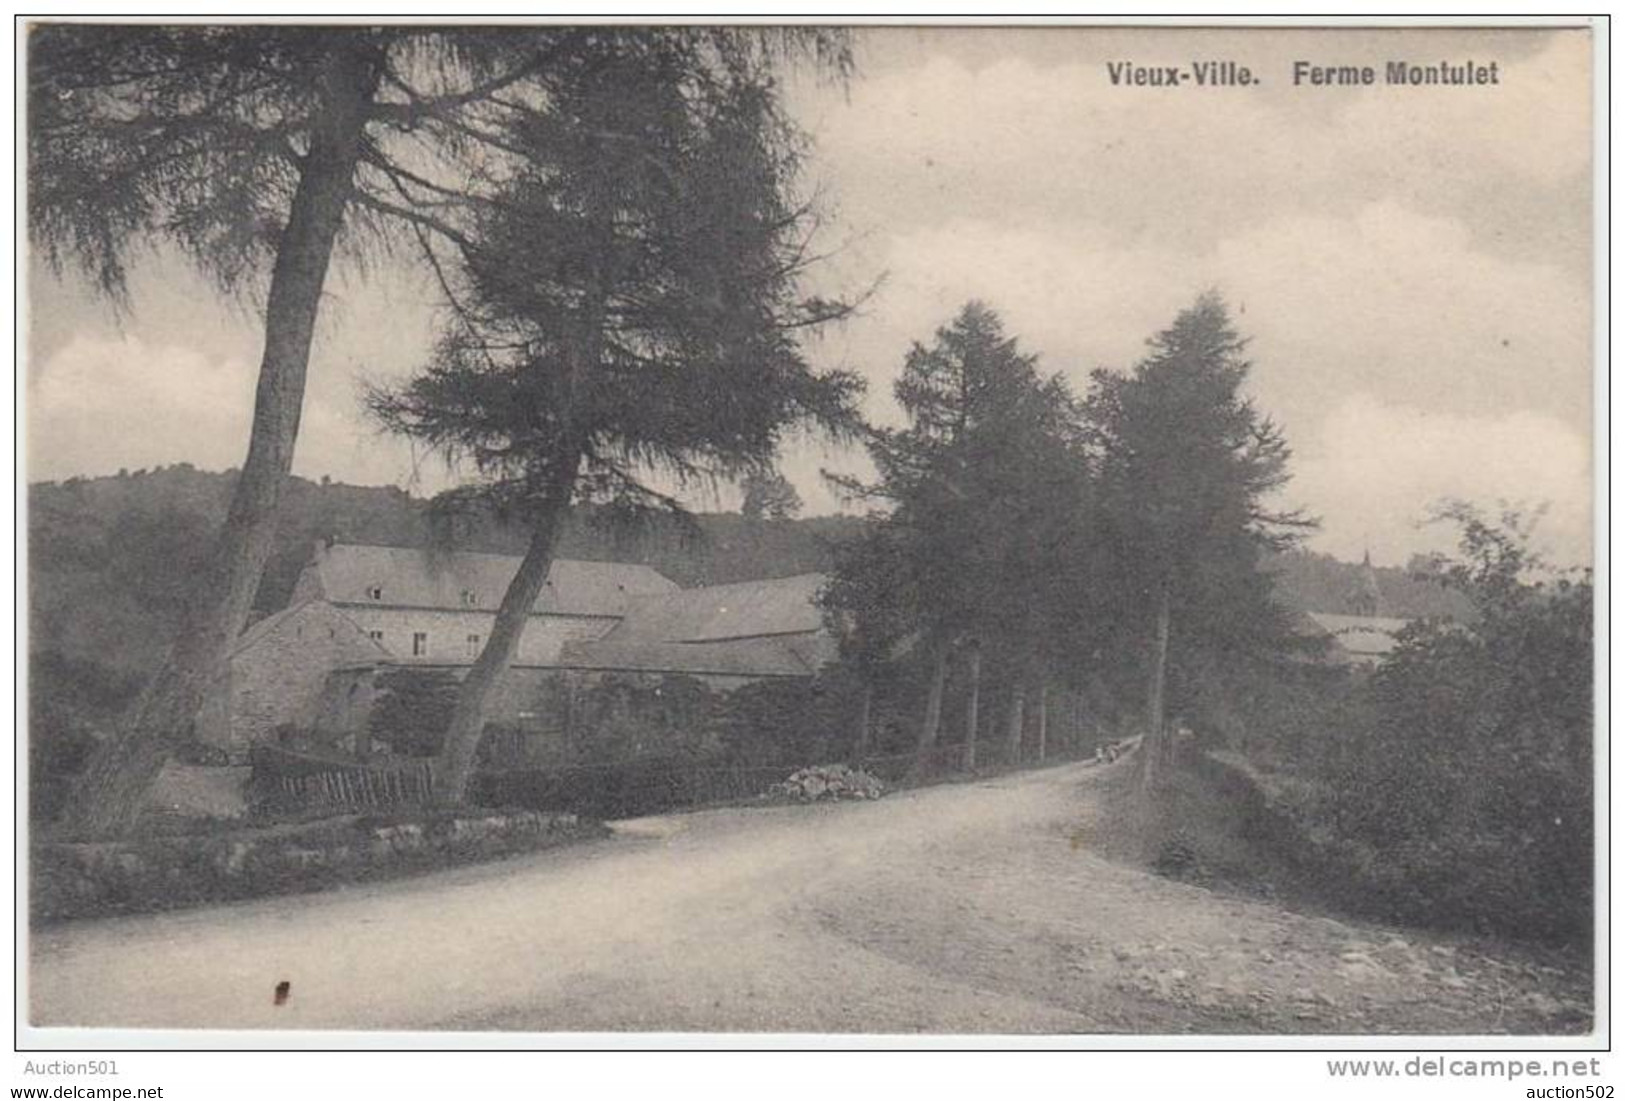 17908g FERME MONTULET - Vieux-Ville - 1911 - Ferrieres